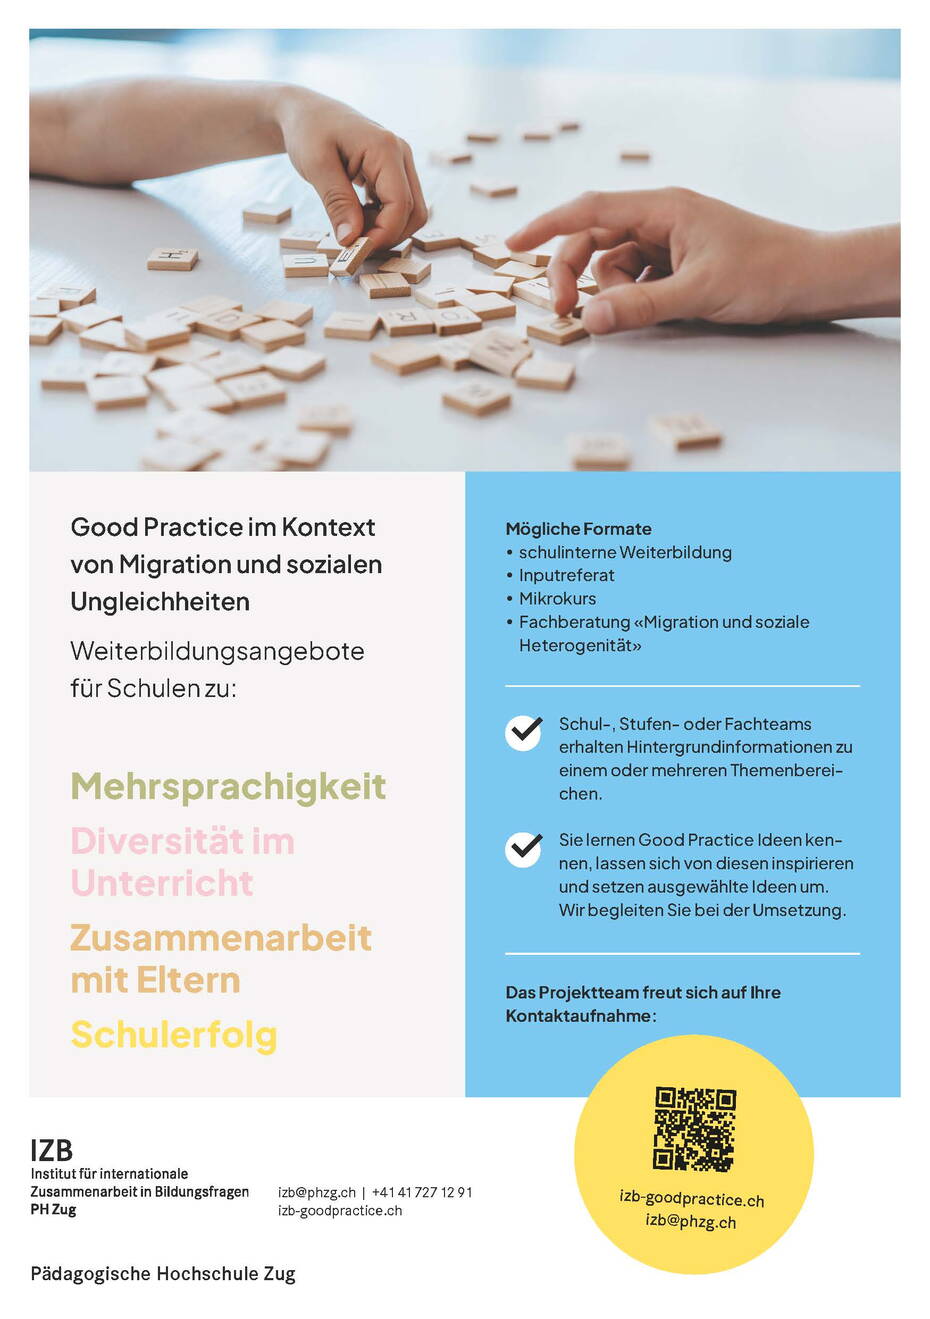 phzug_izb_goodpractice_flyer.jpg